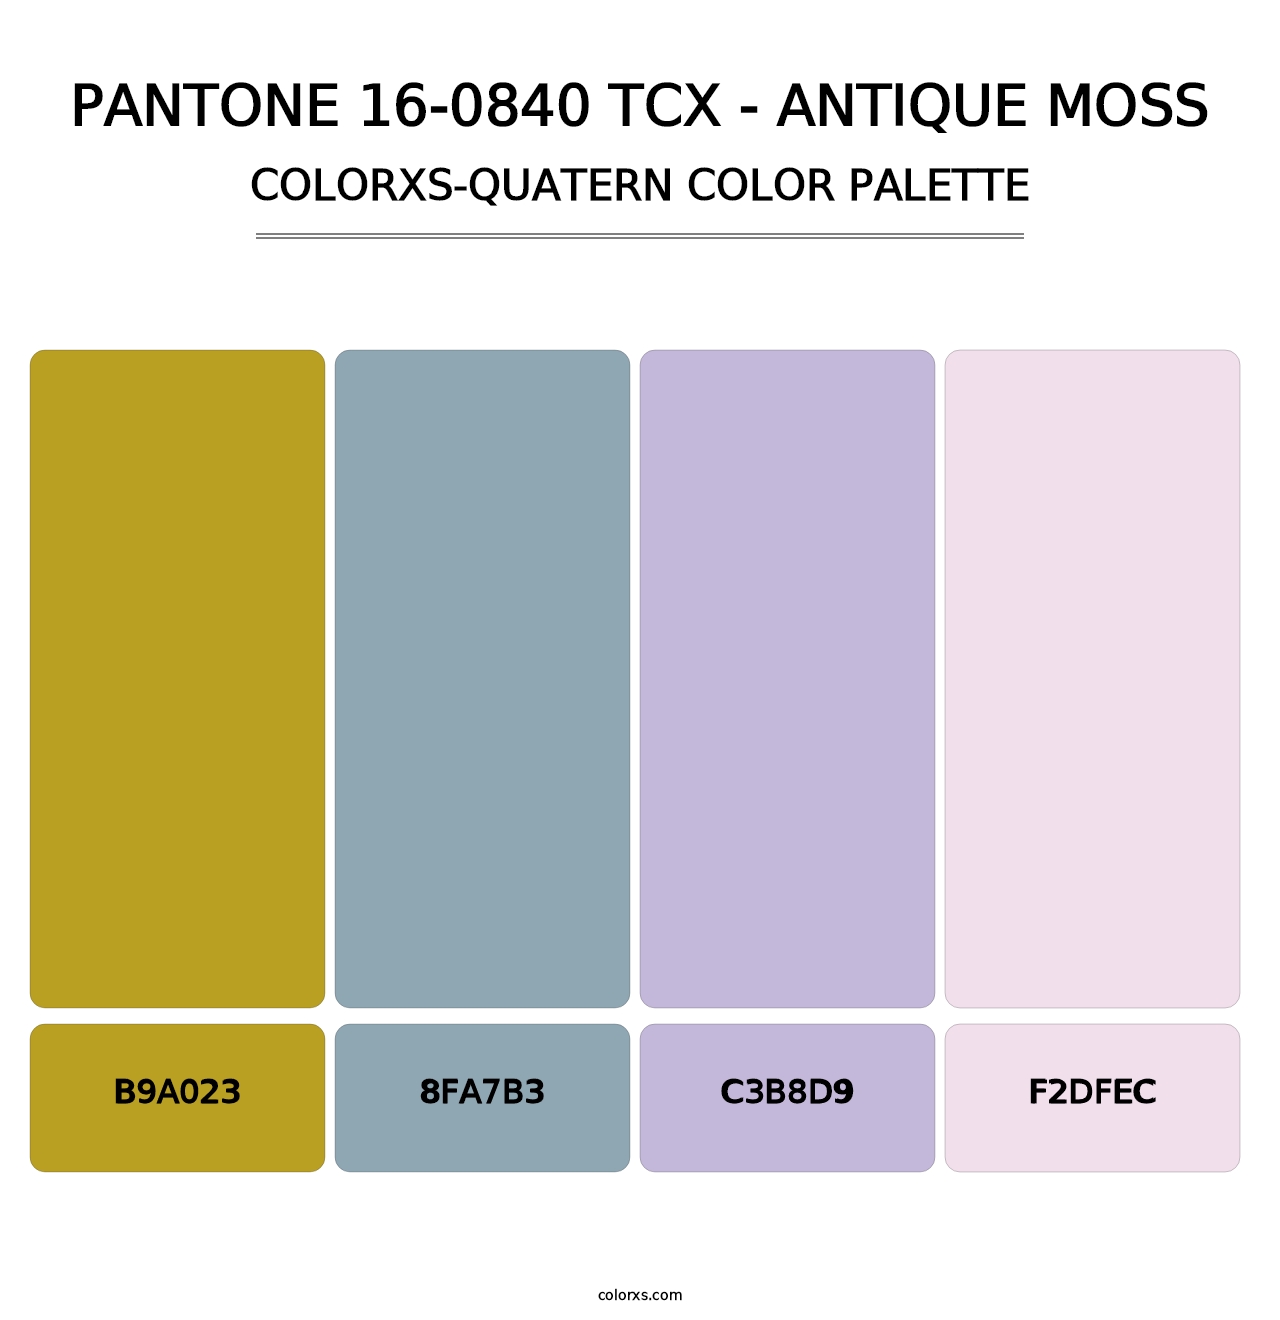 PANTONE 16-0840 TCX - Antique Moss - Colorxs Quatern Palette